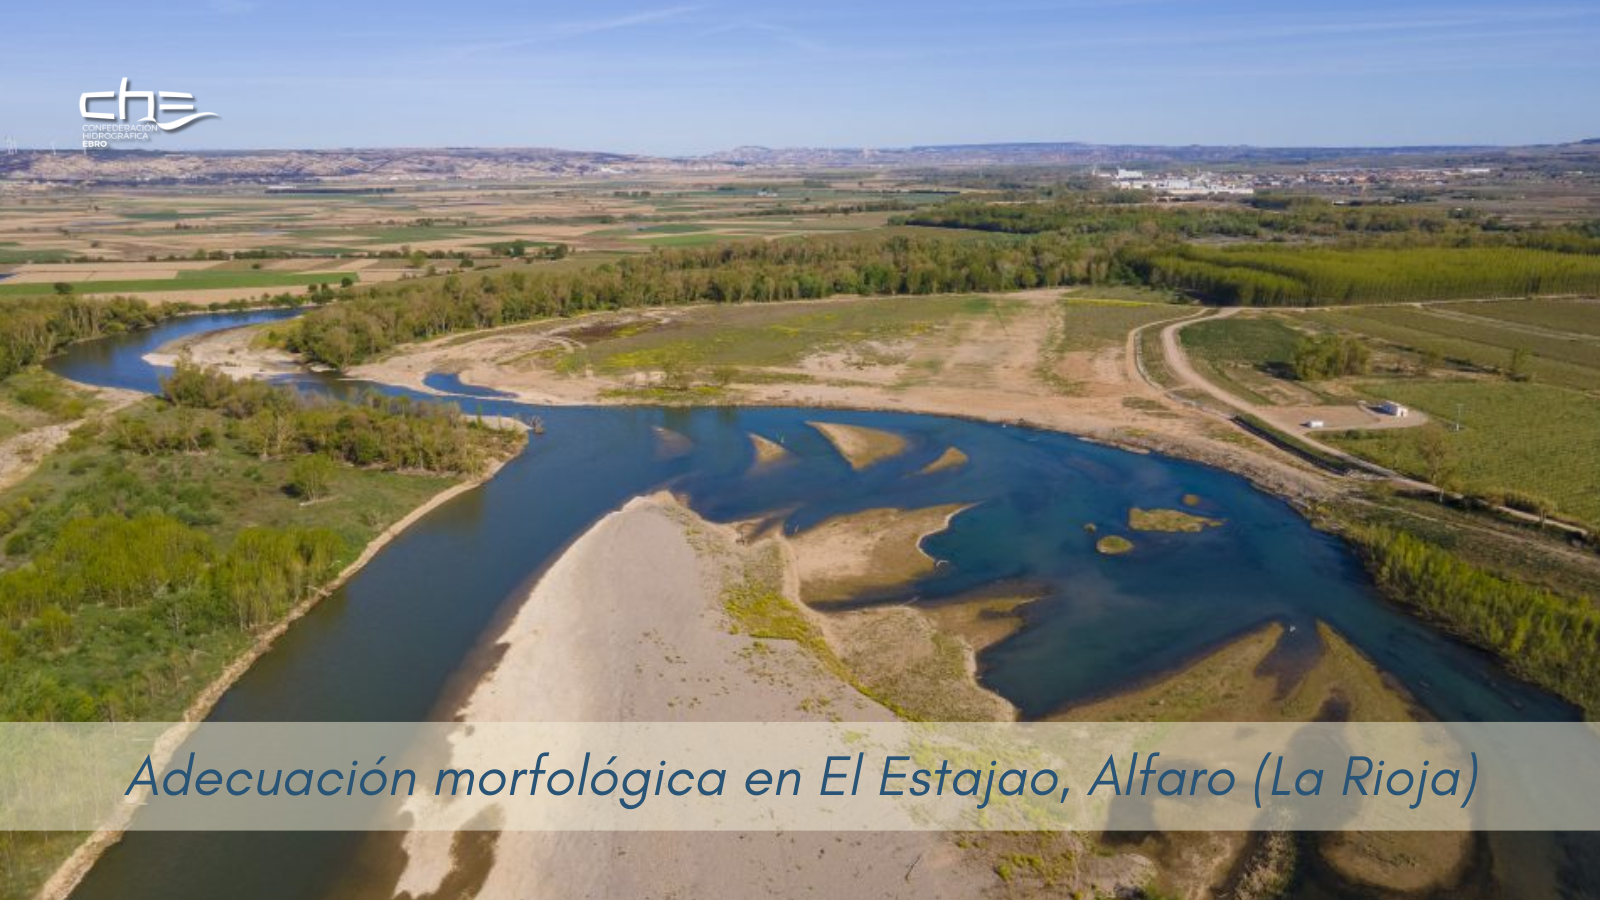 Imagen noticia - Concluye la adecuación morfológica y restauración ambiental del Ebro en El Estajao, Alfaro (La Rioja)